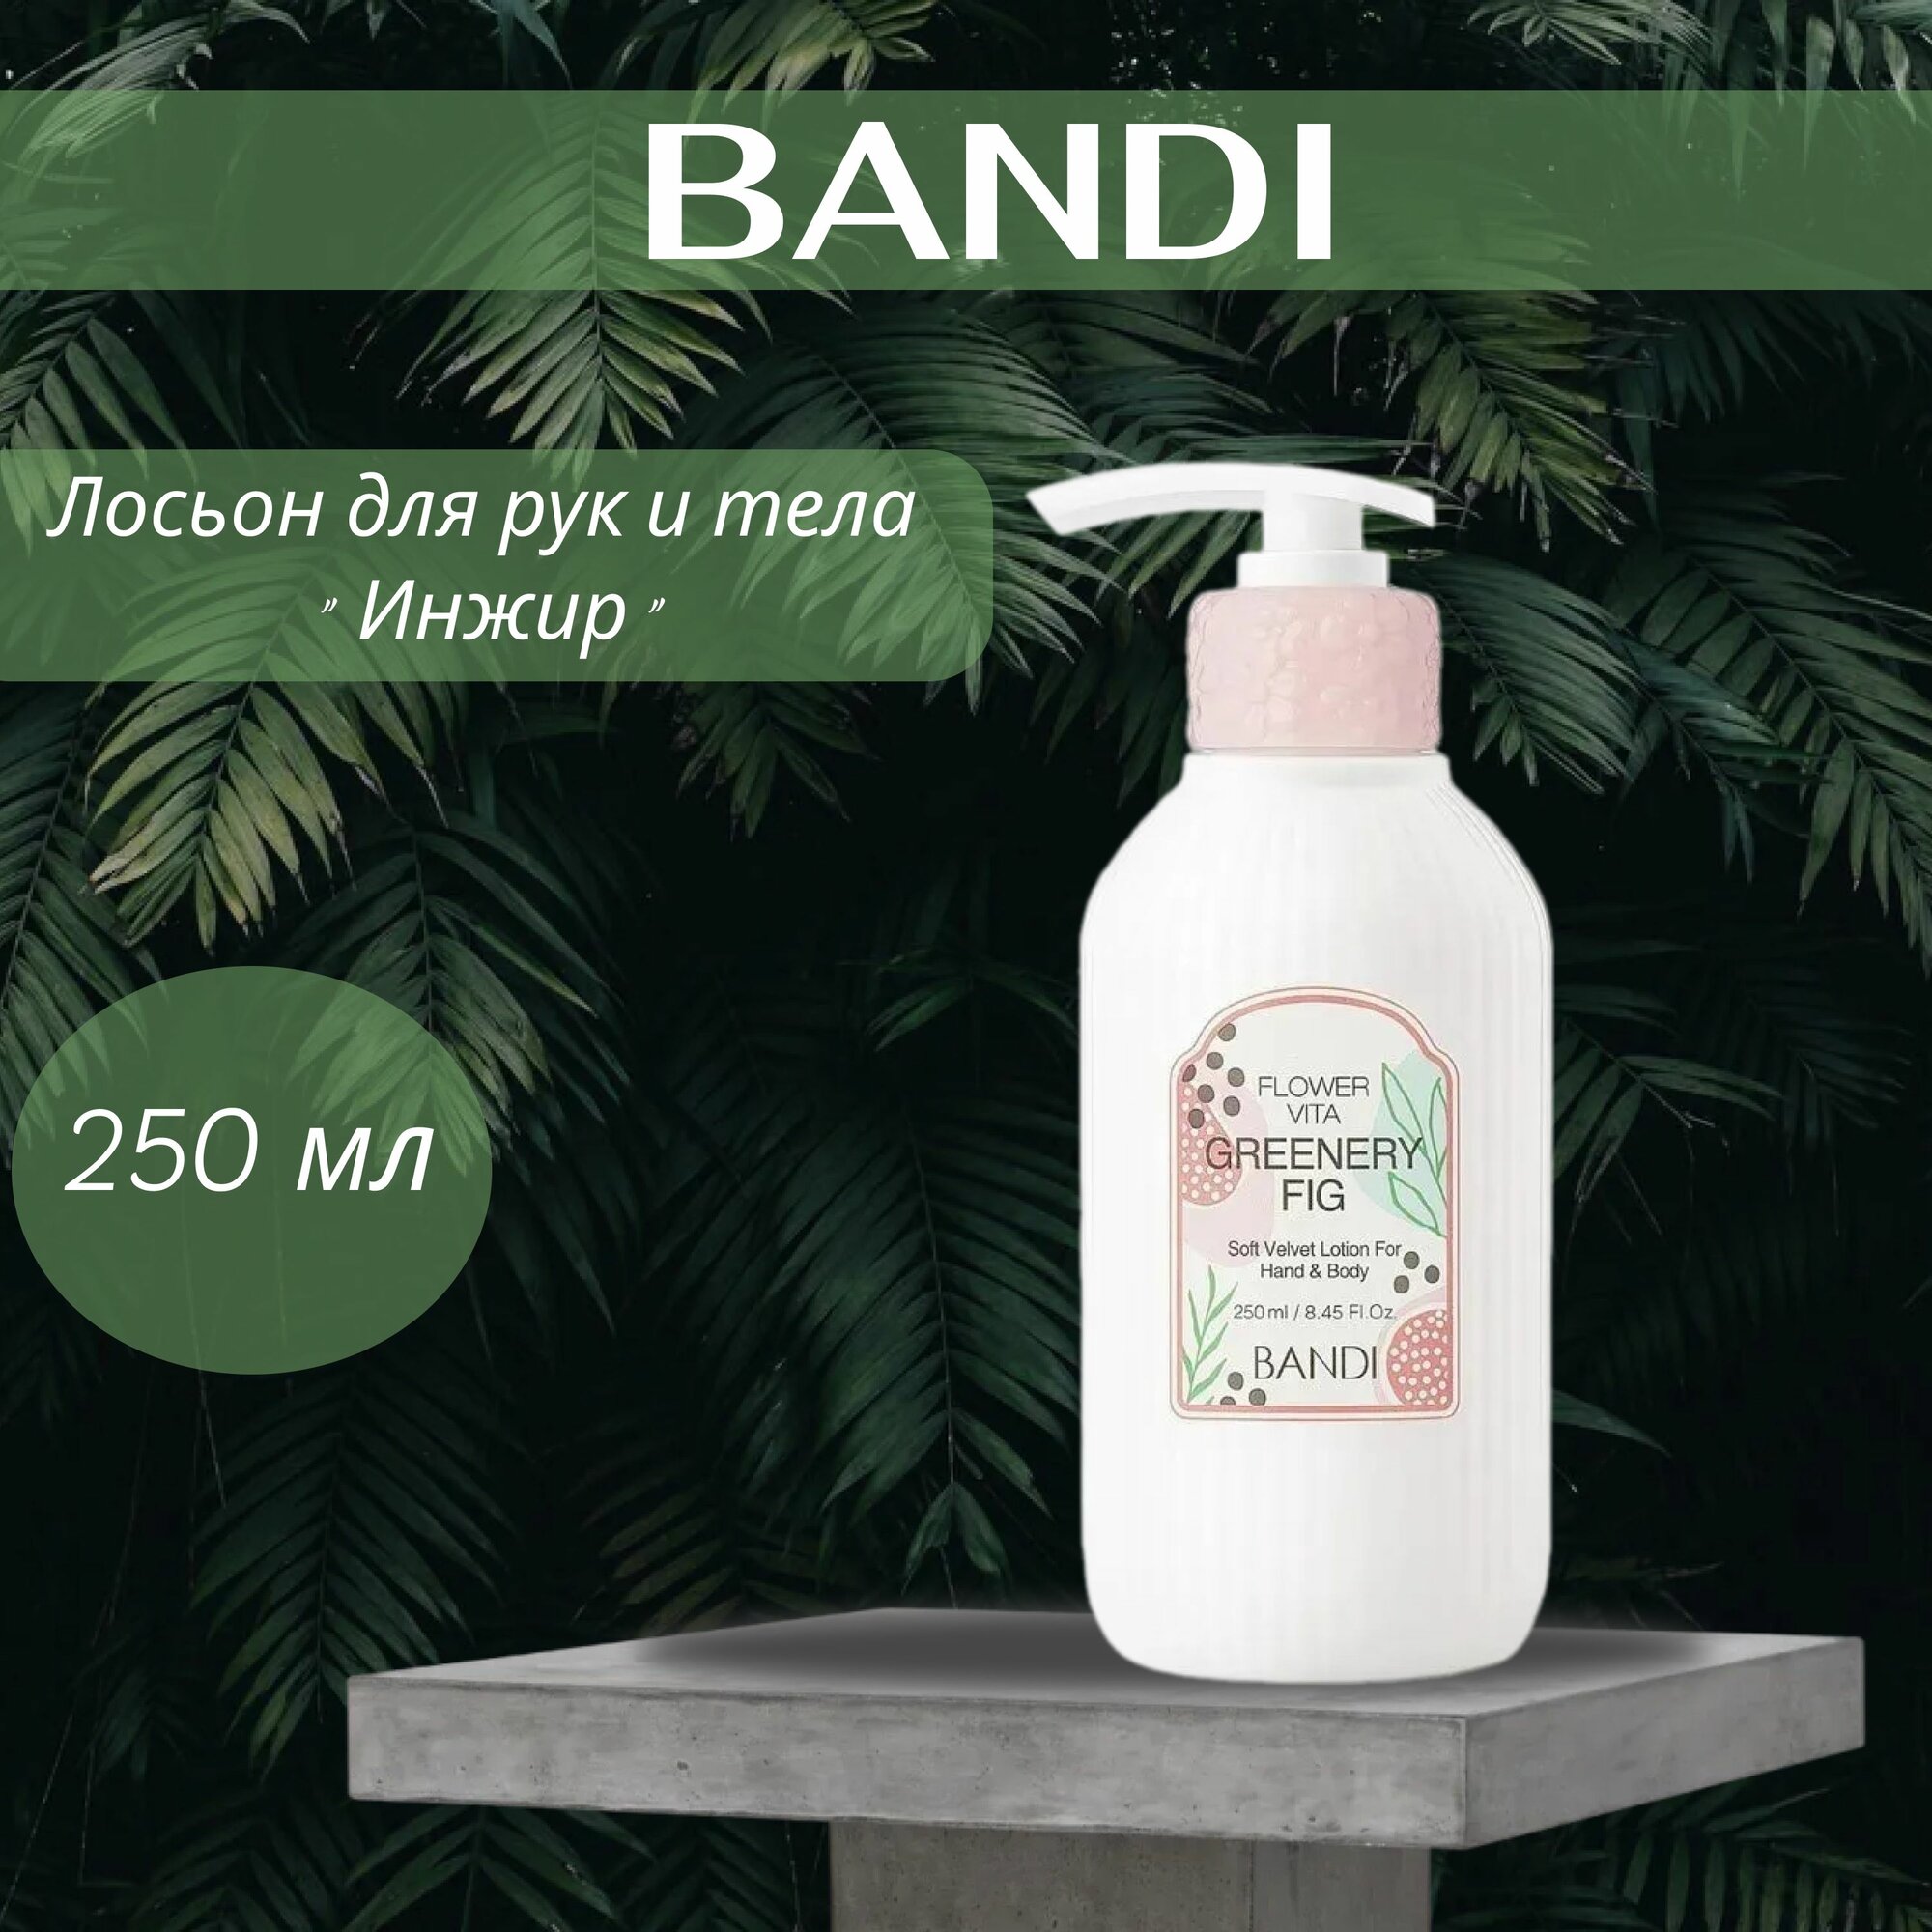 BANDI Лосьон для рук и тела Инжир / BANDI FLOWER VITA SOFT VELVET LOTION (GREENERY FIG) 250 мл - фото №4